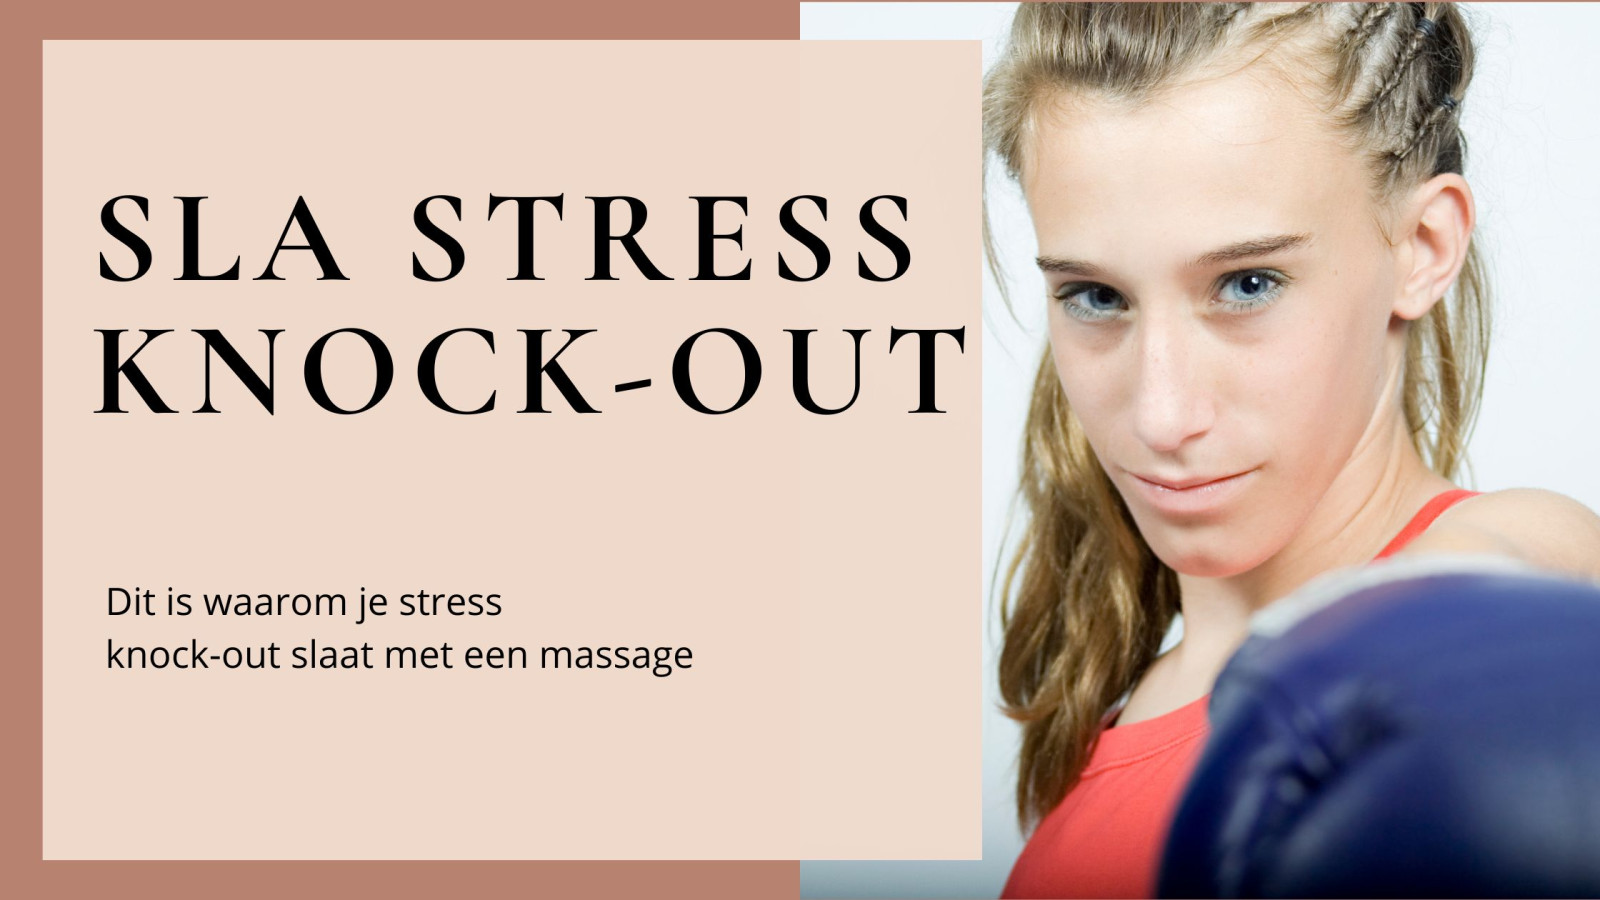 Sla stress knock-out met een massage